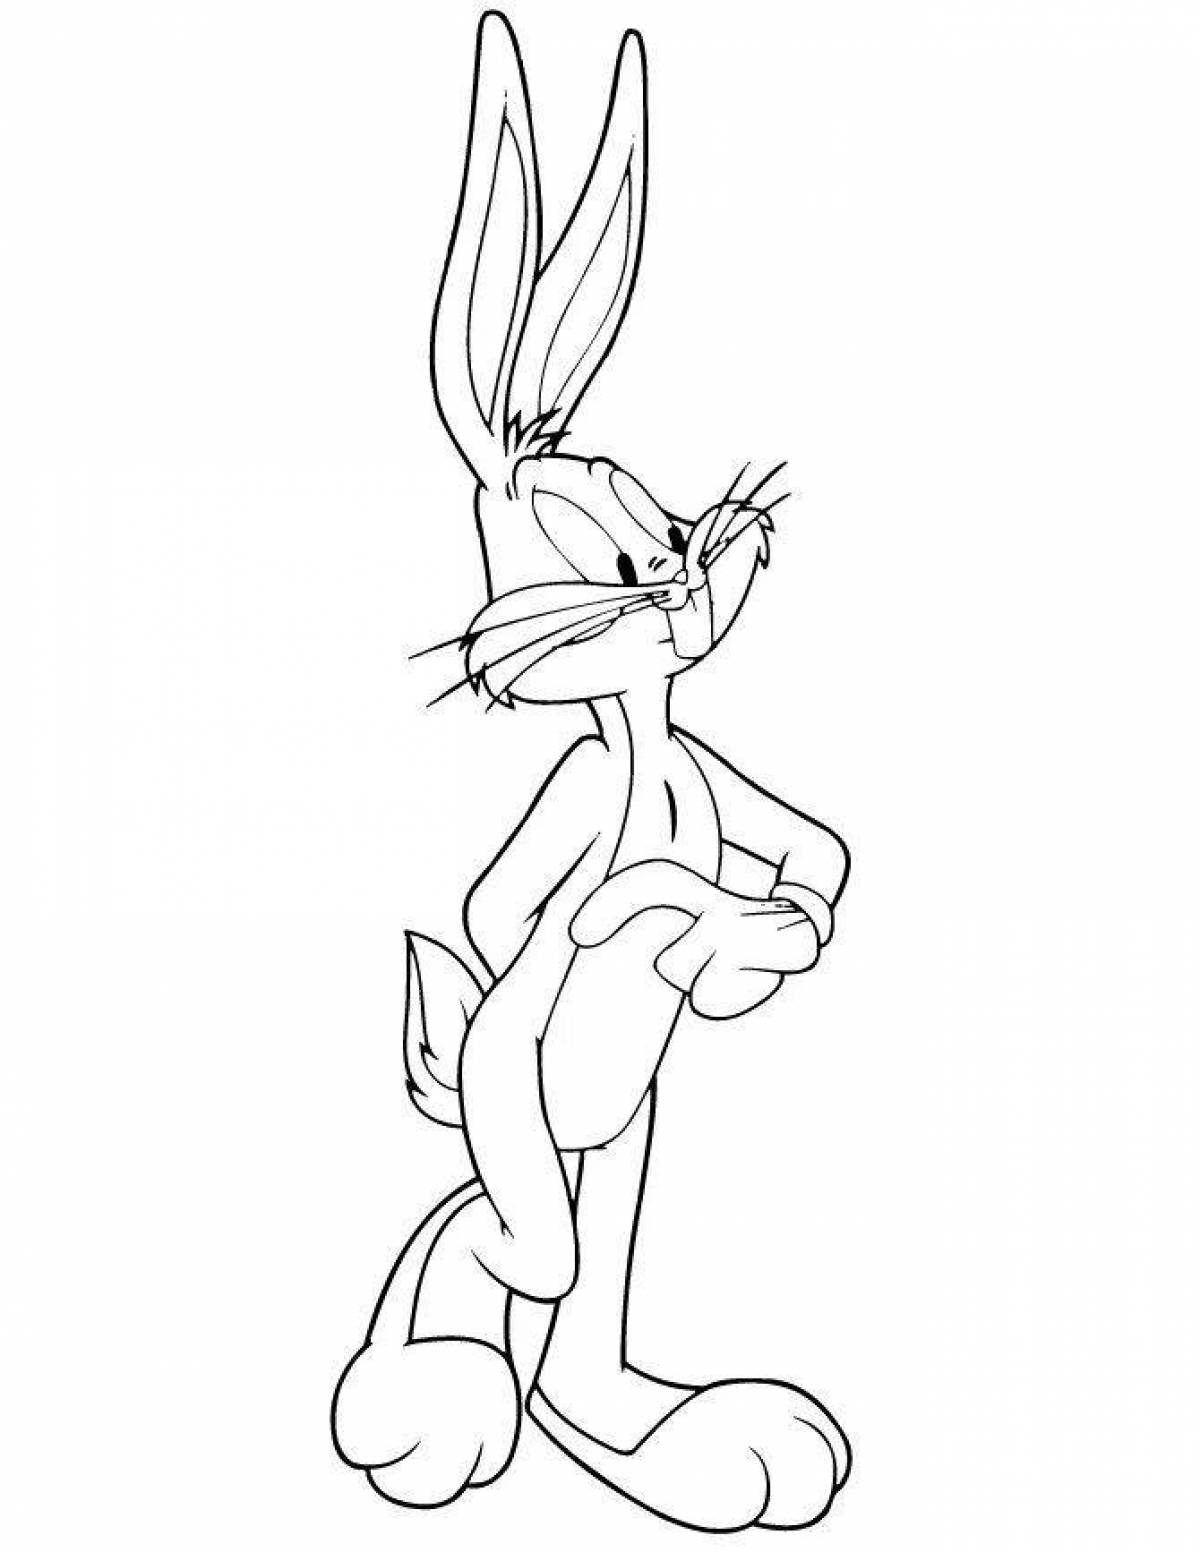 Bugs Bunny fun coloring book